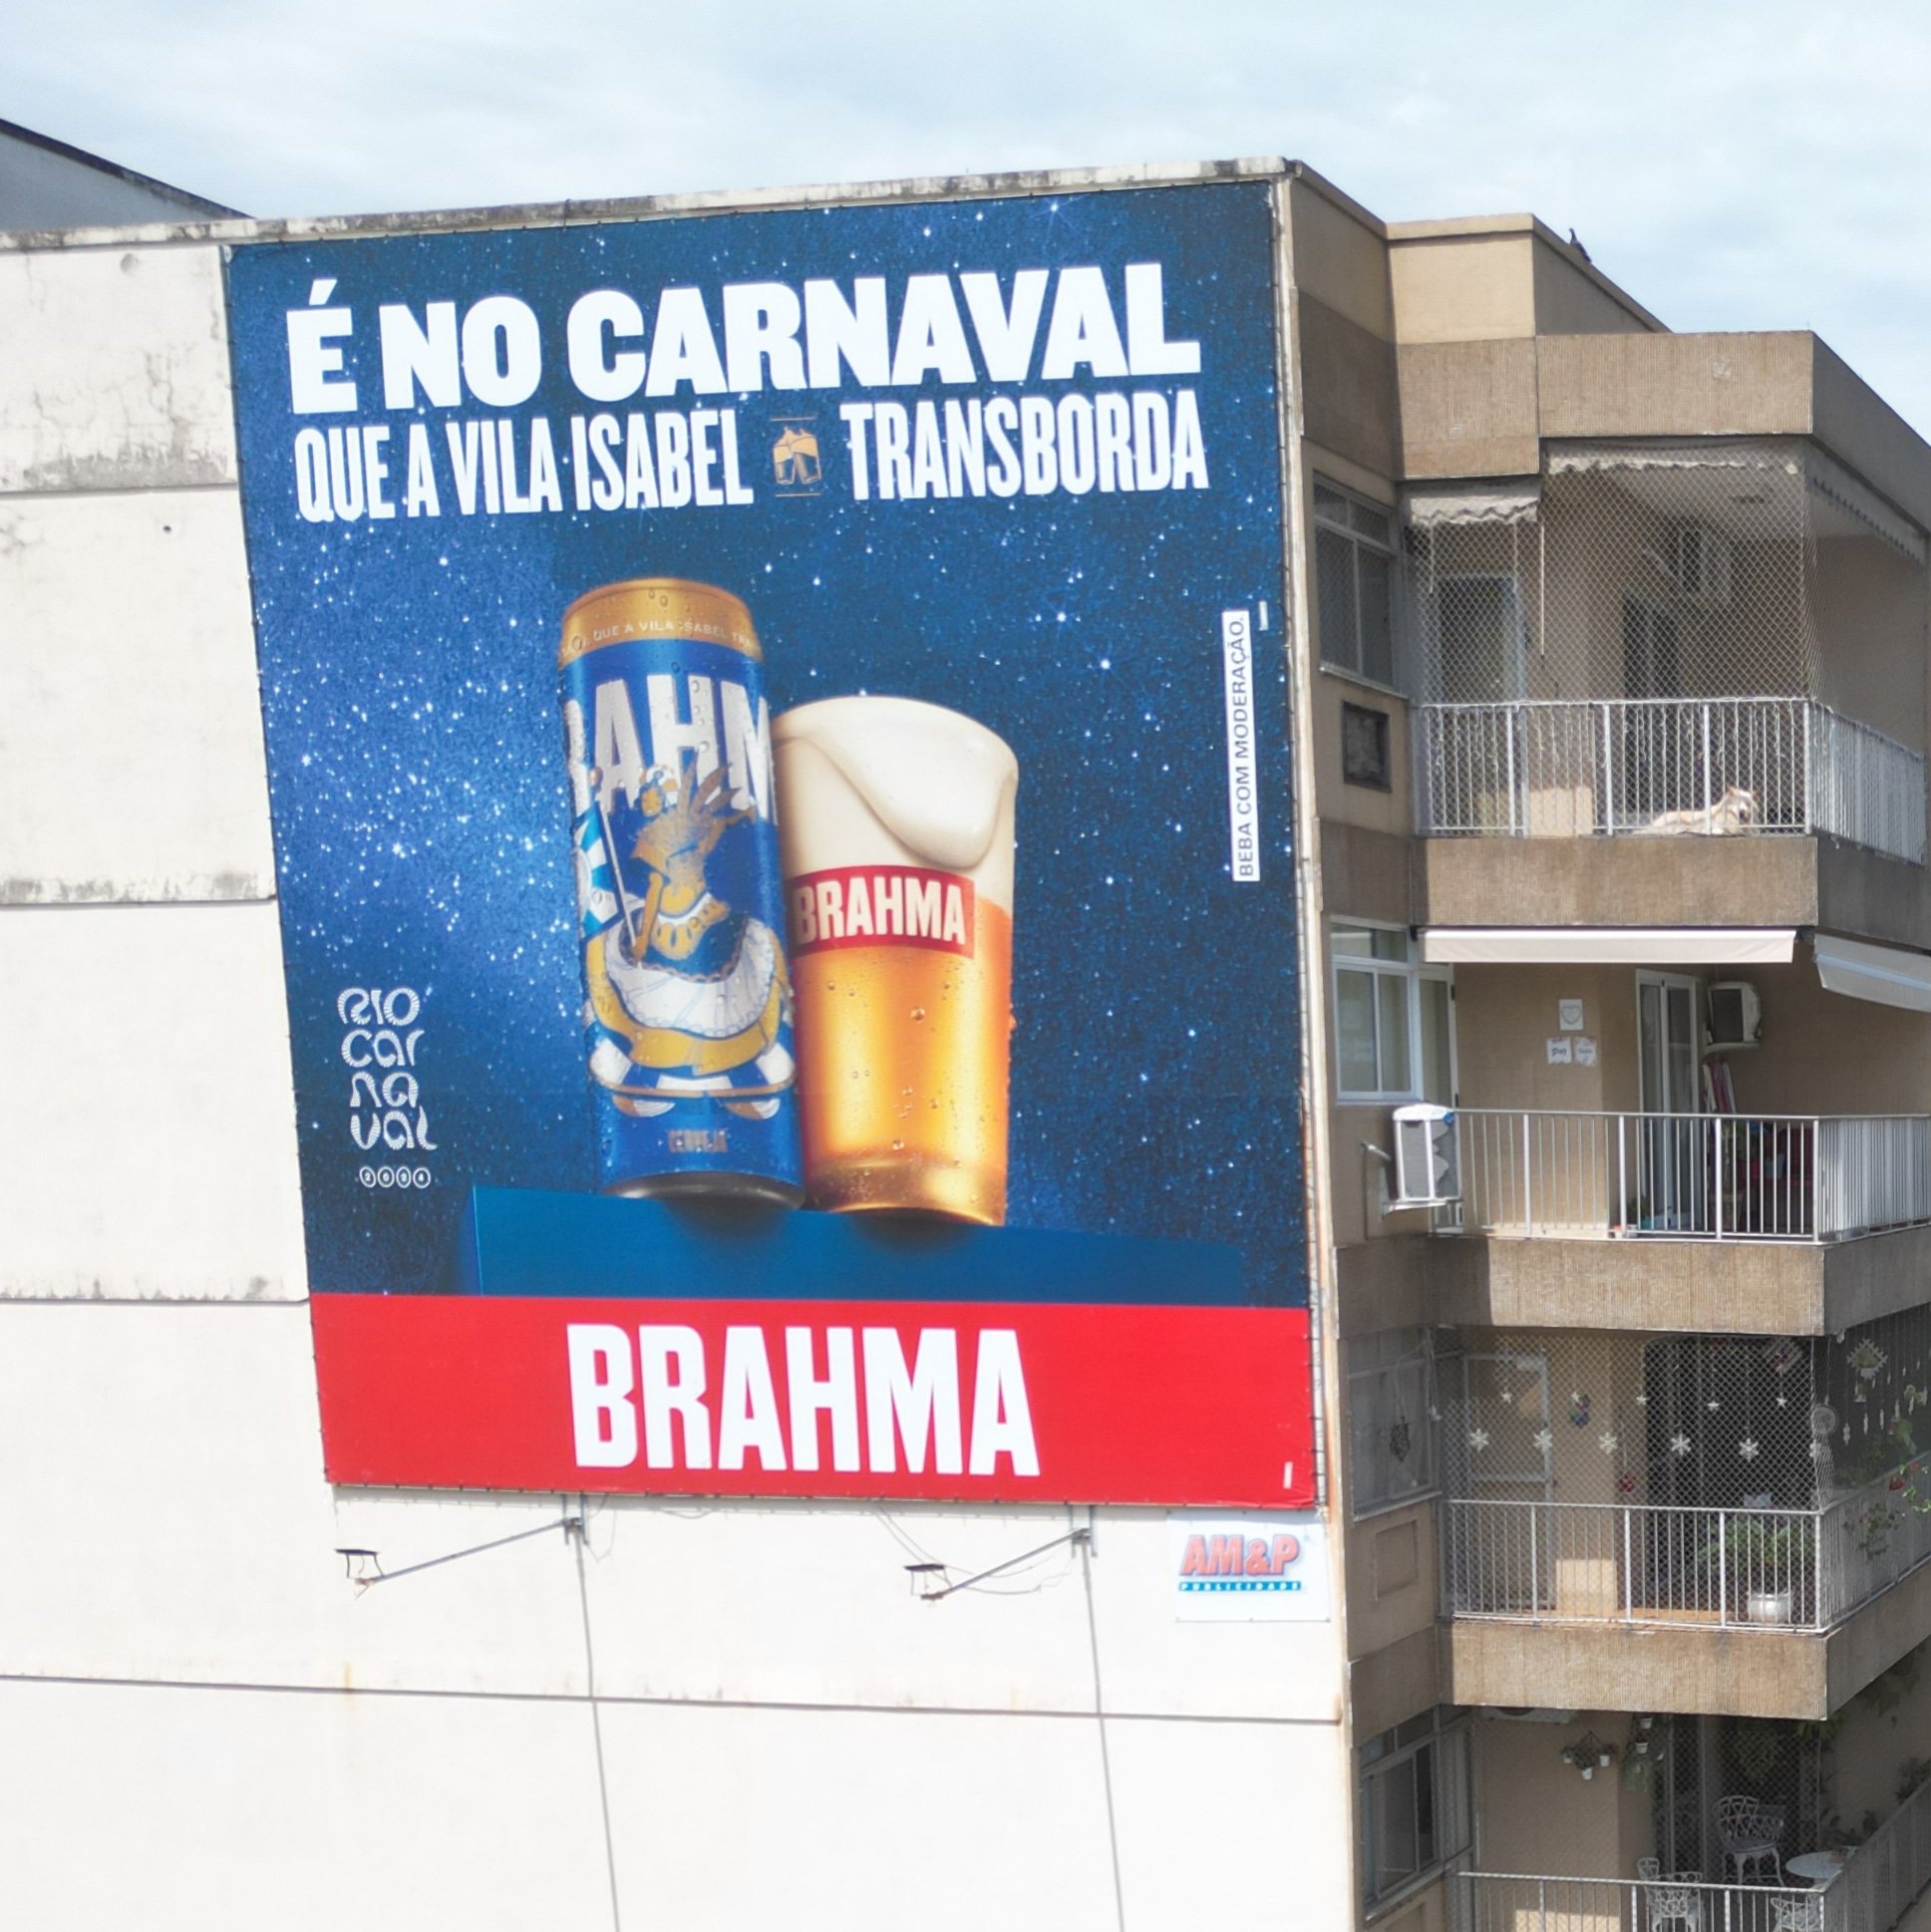 Unidos de Vila Isabel on X: Todo o sabor do nosso samba em Vila Isabel,  bairro da boemia, com essa mídia maravilhosa da @brahmacerveja, em parceria  especial promovida junto à @RioCarnaval. 🍻